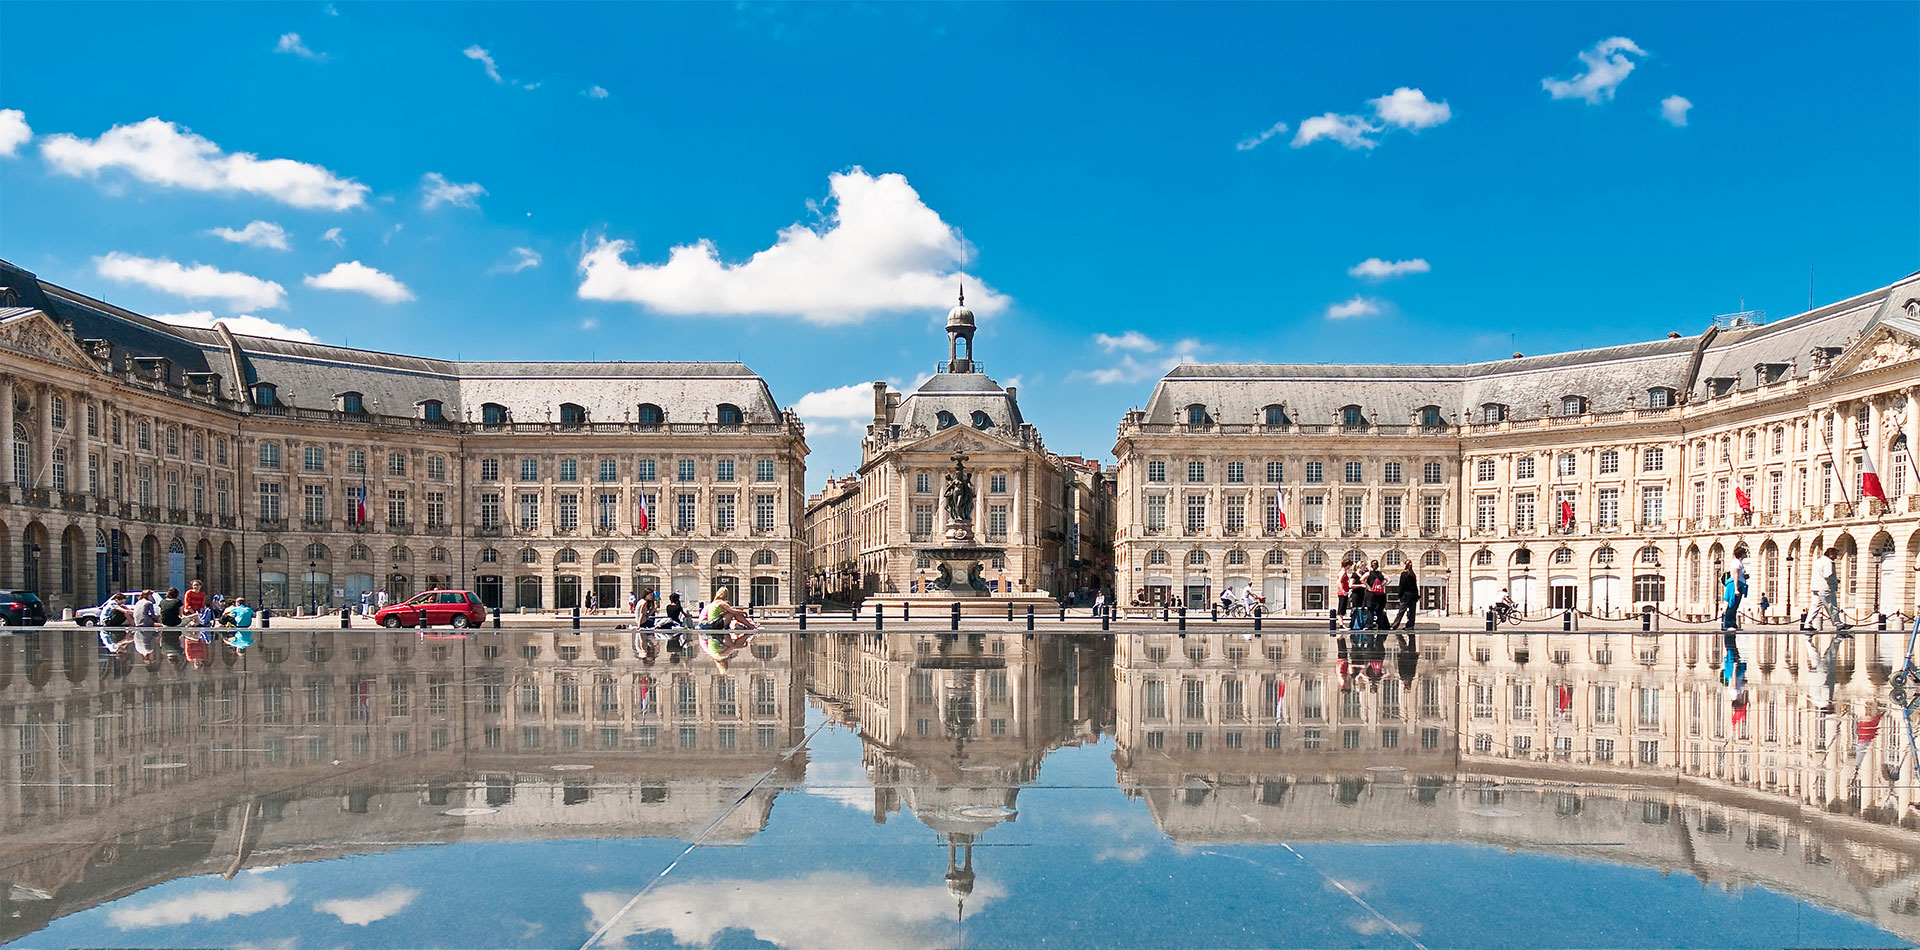 Place de la Bourse square in Bordeaux, France